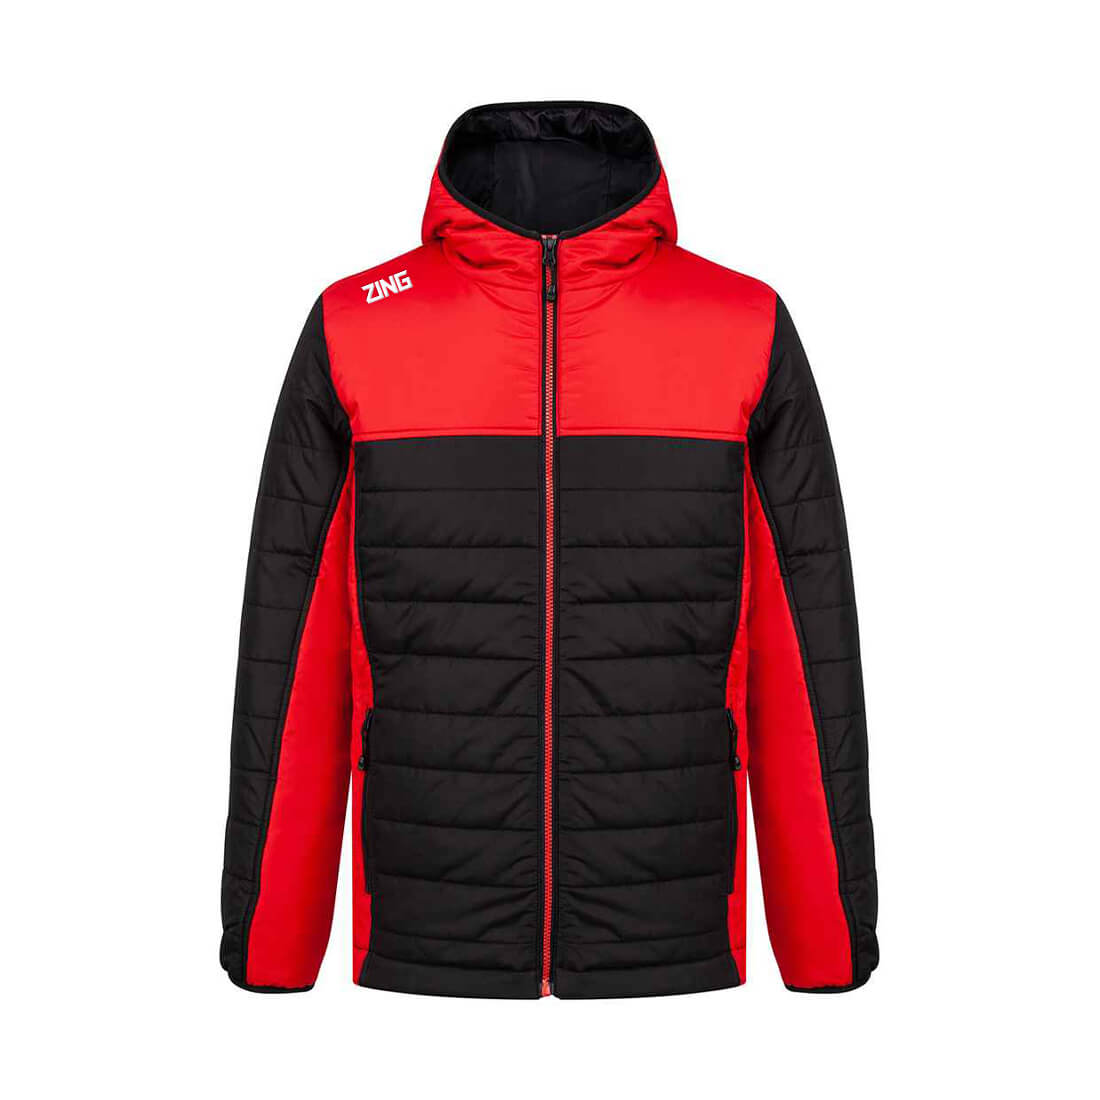 ZING Sportswear Match Jacket | Training Kit and Teamwear - Match Red